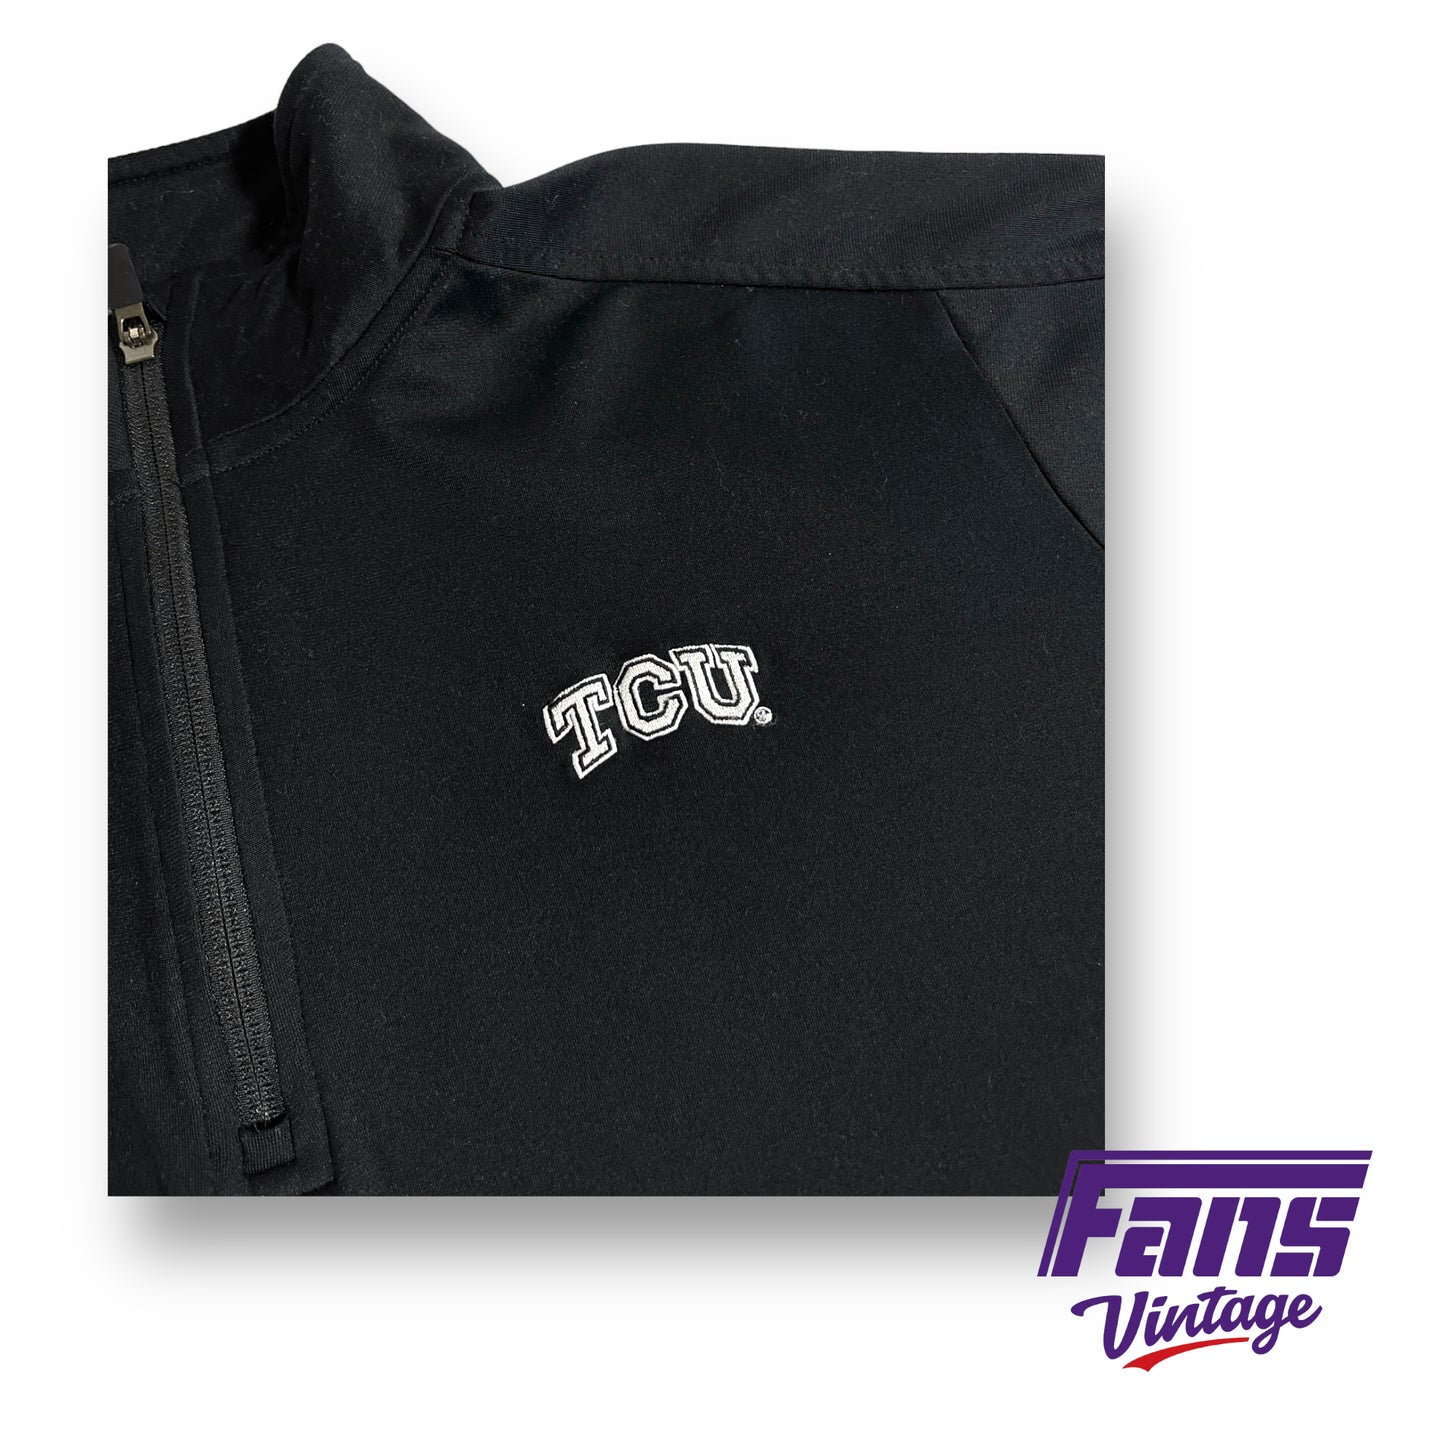 Nike TCU team issued coach's quarter-zip pullover